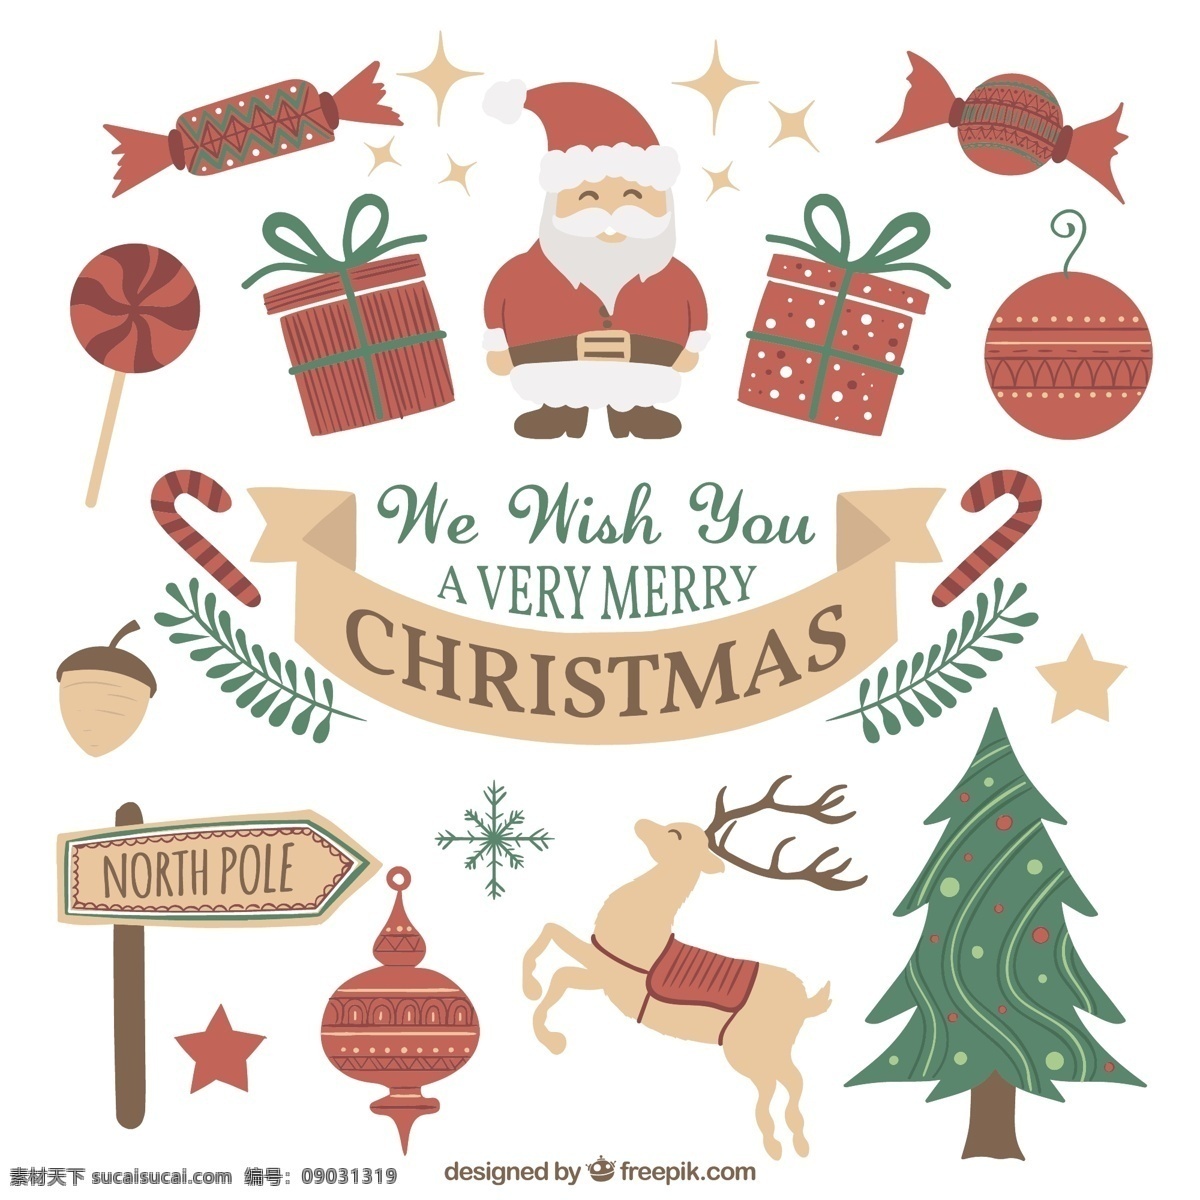 手工 绘制 圣诞 元素 圣诞树 一方面 礼品 圣诞快乐 冬天 手绘 快乐 圣诞老人 克劳斯 节日 庆祝 礼物 装饰 绘画 驯鹿 白色